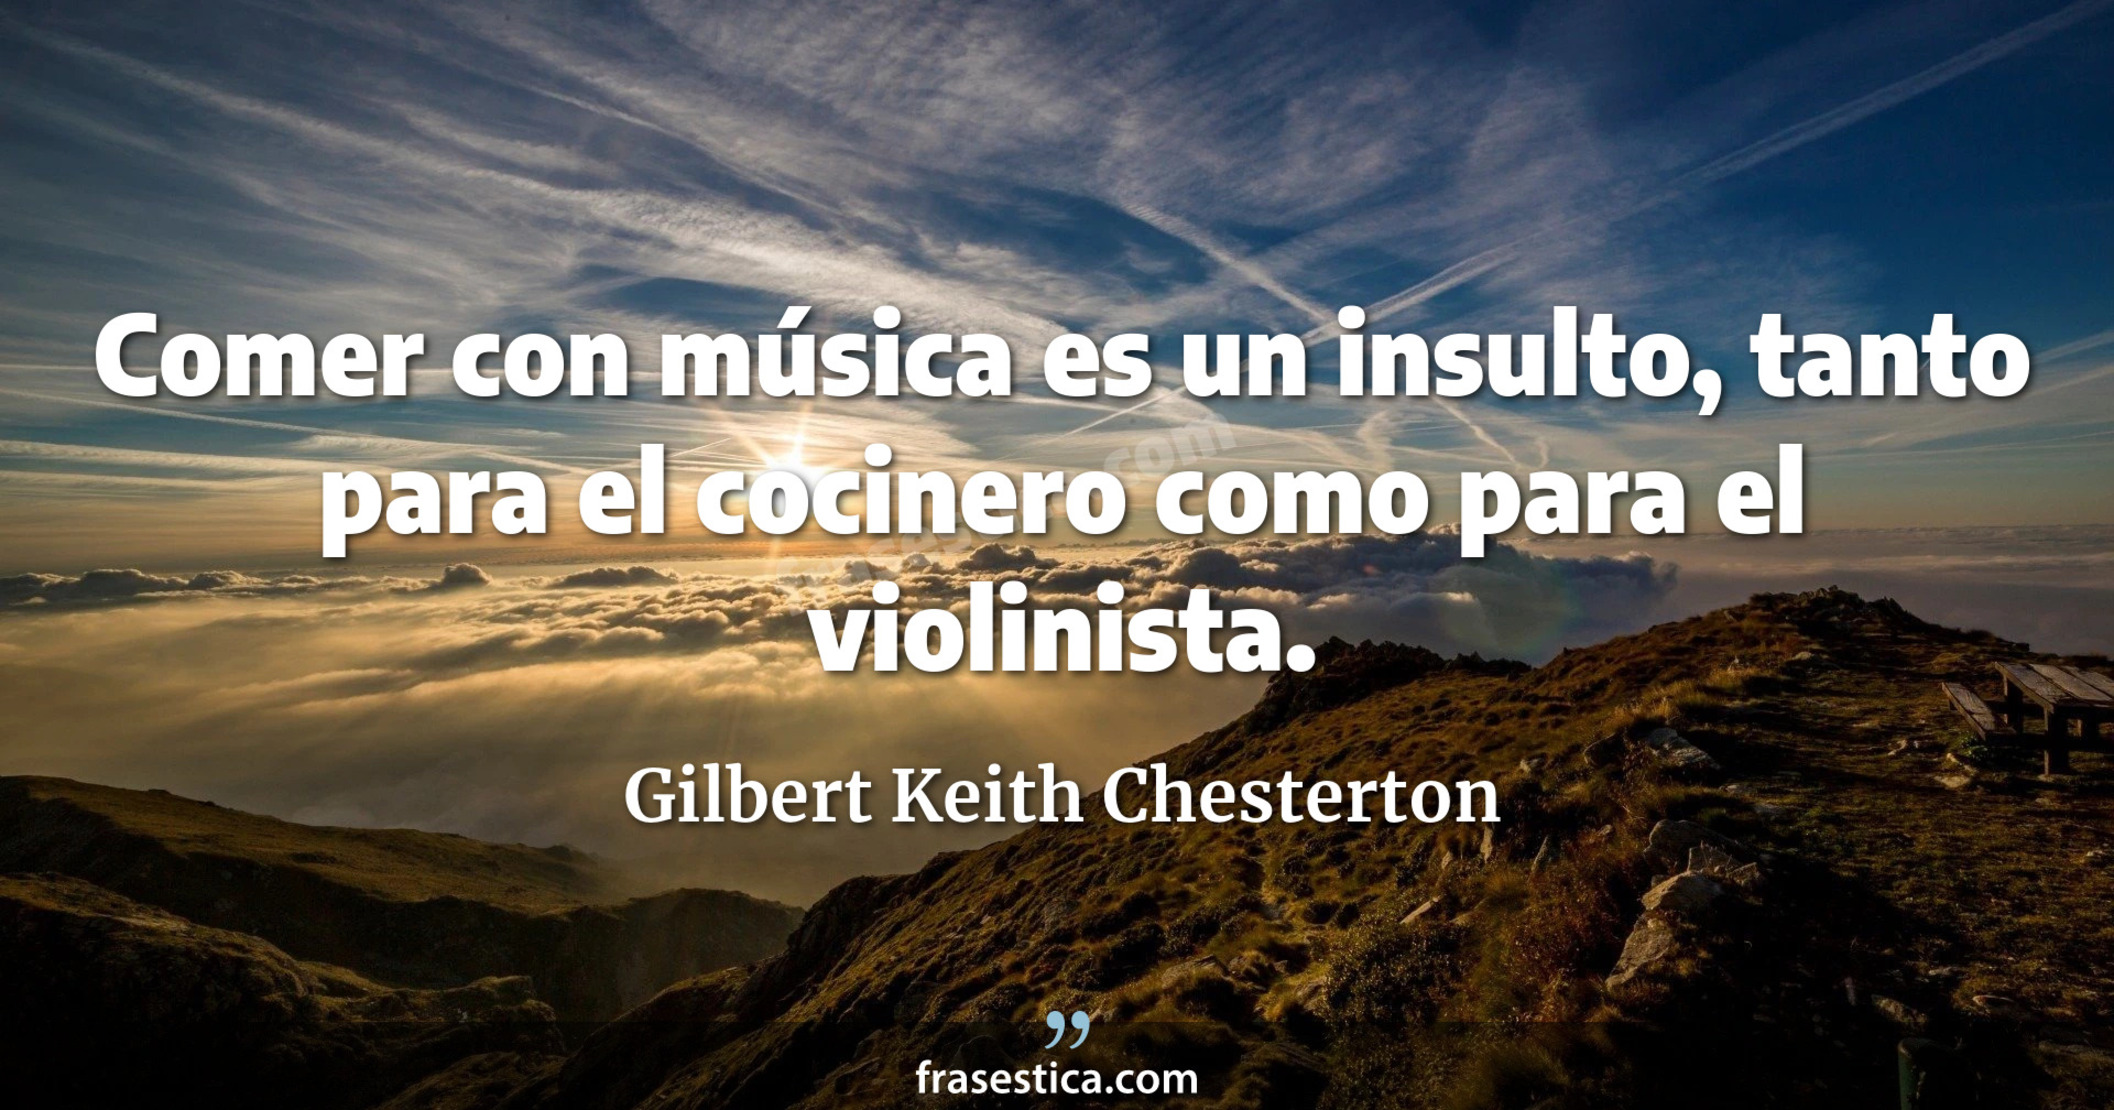 Comer con música es un insulto, tanto para el cocinero como para el violinista. - Gilbert Keith Chesterton